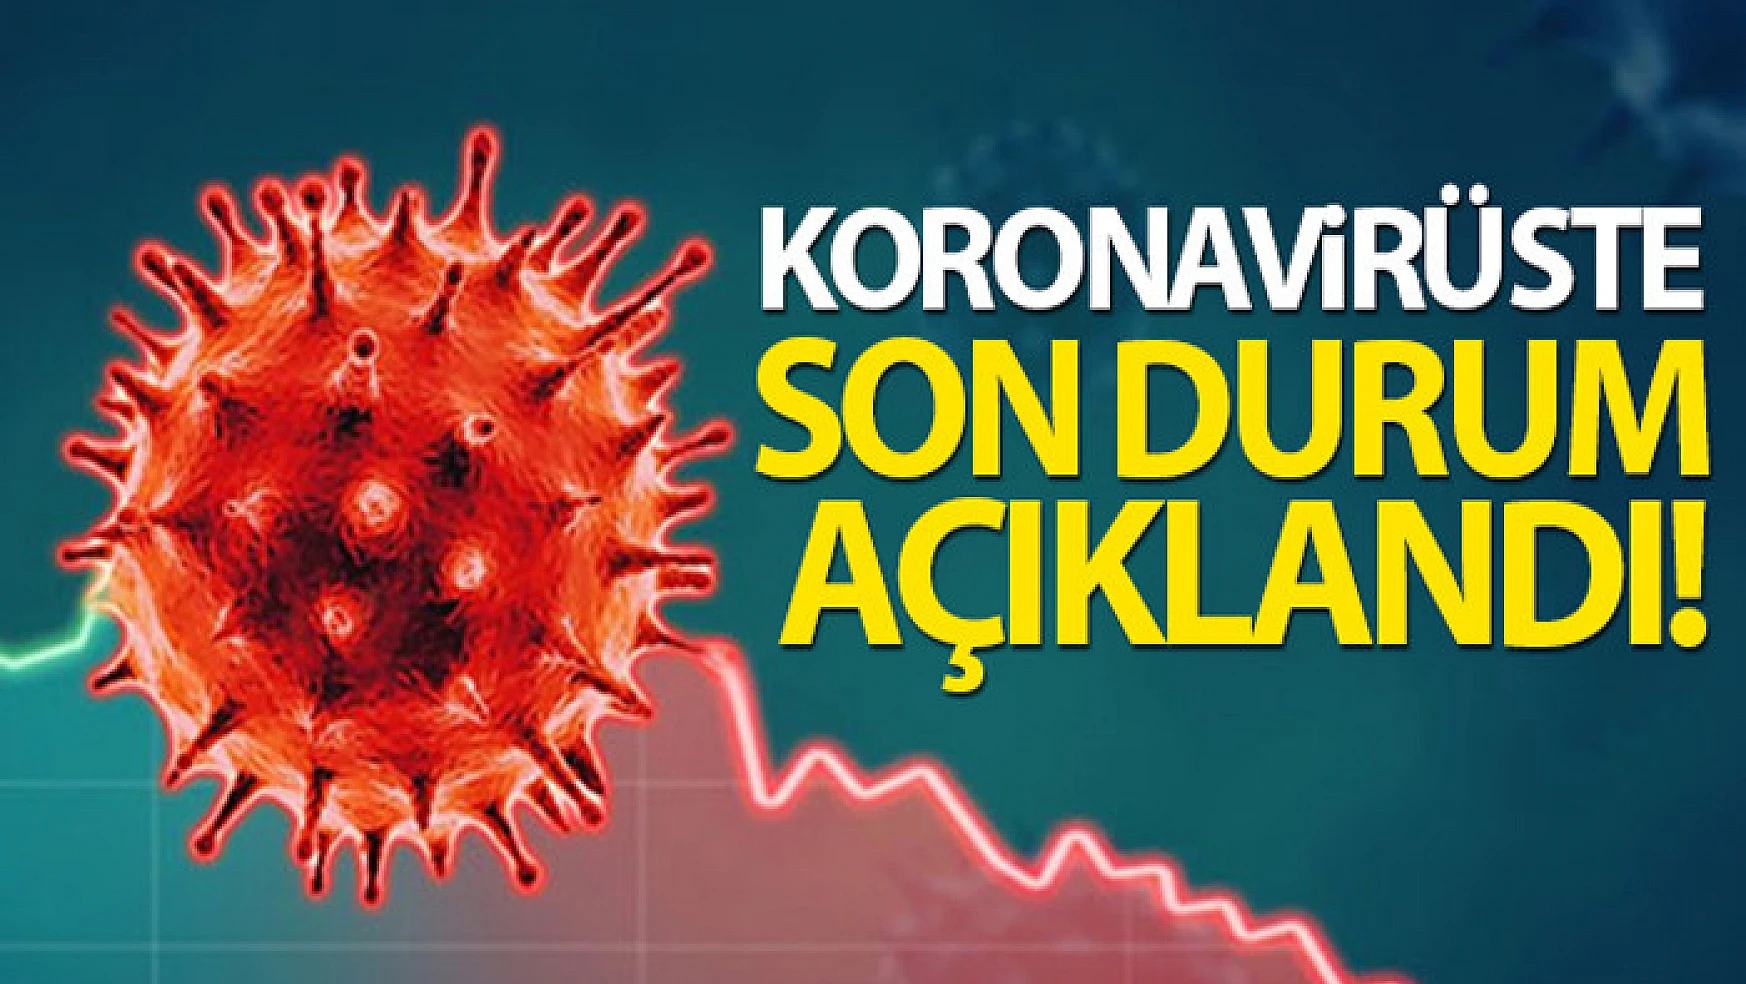 Son 24 saatte korona virüsten 112 kişi hayatını kaybetti